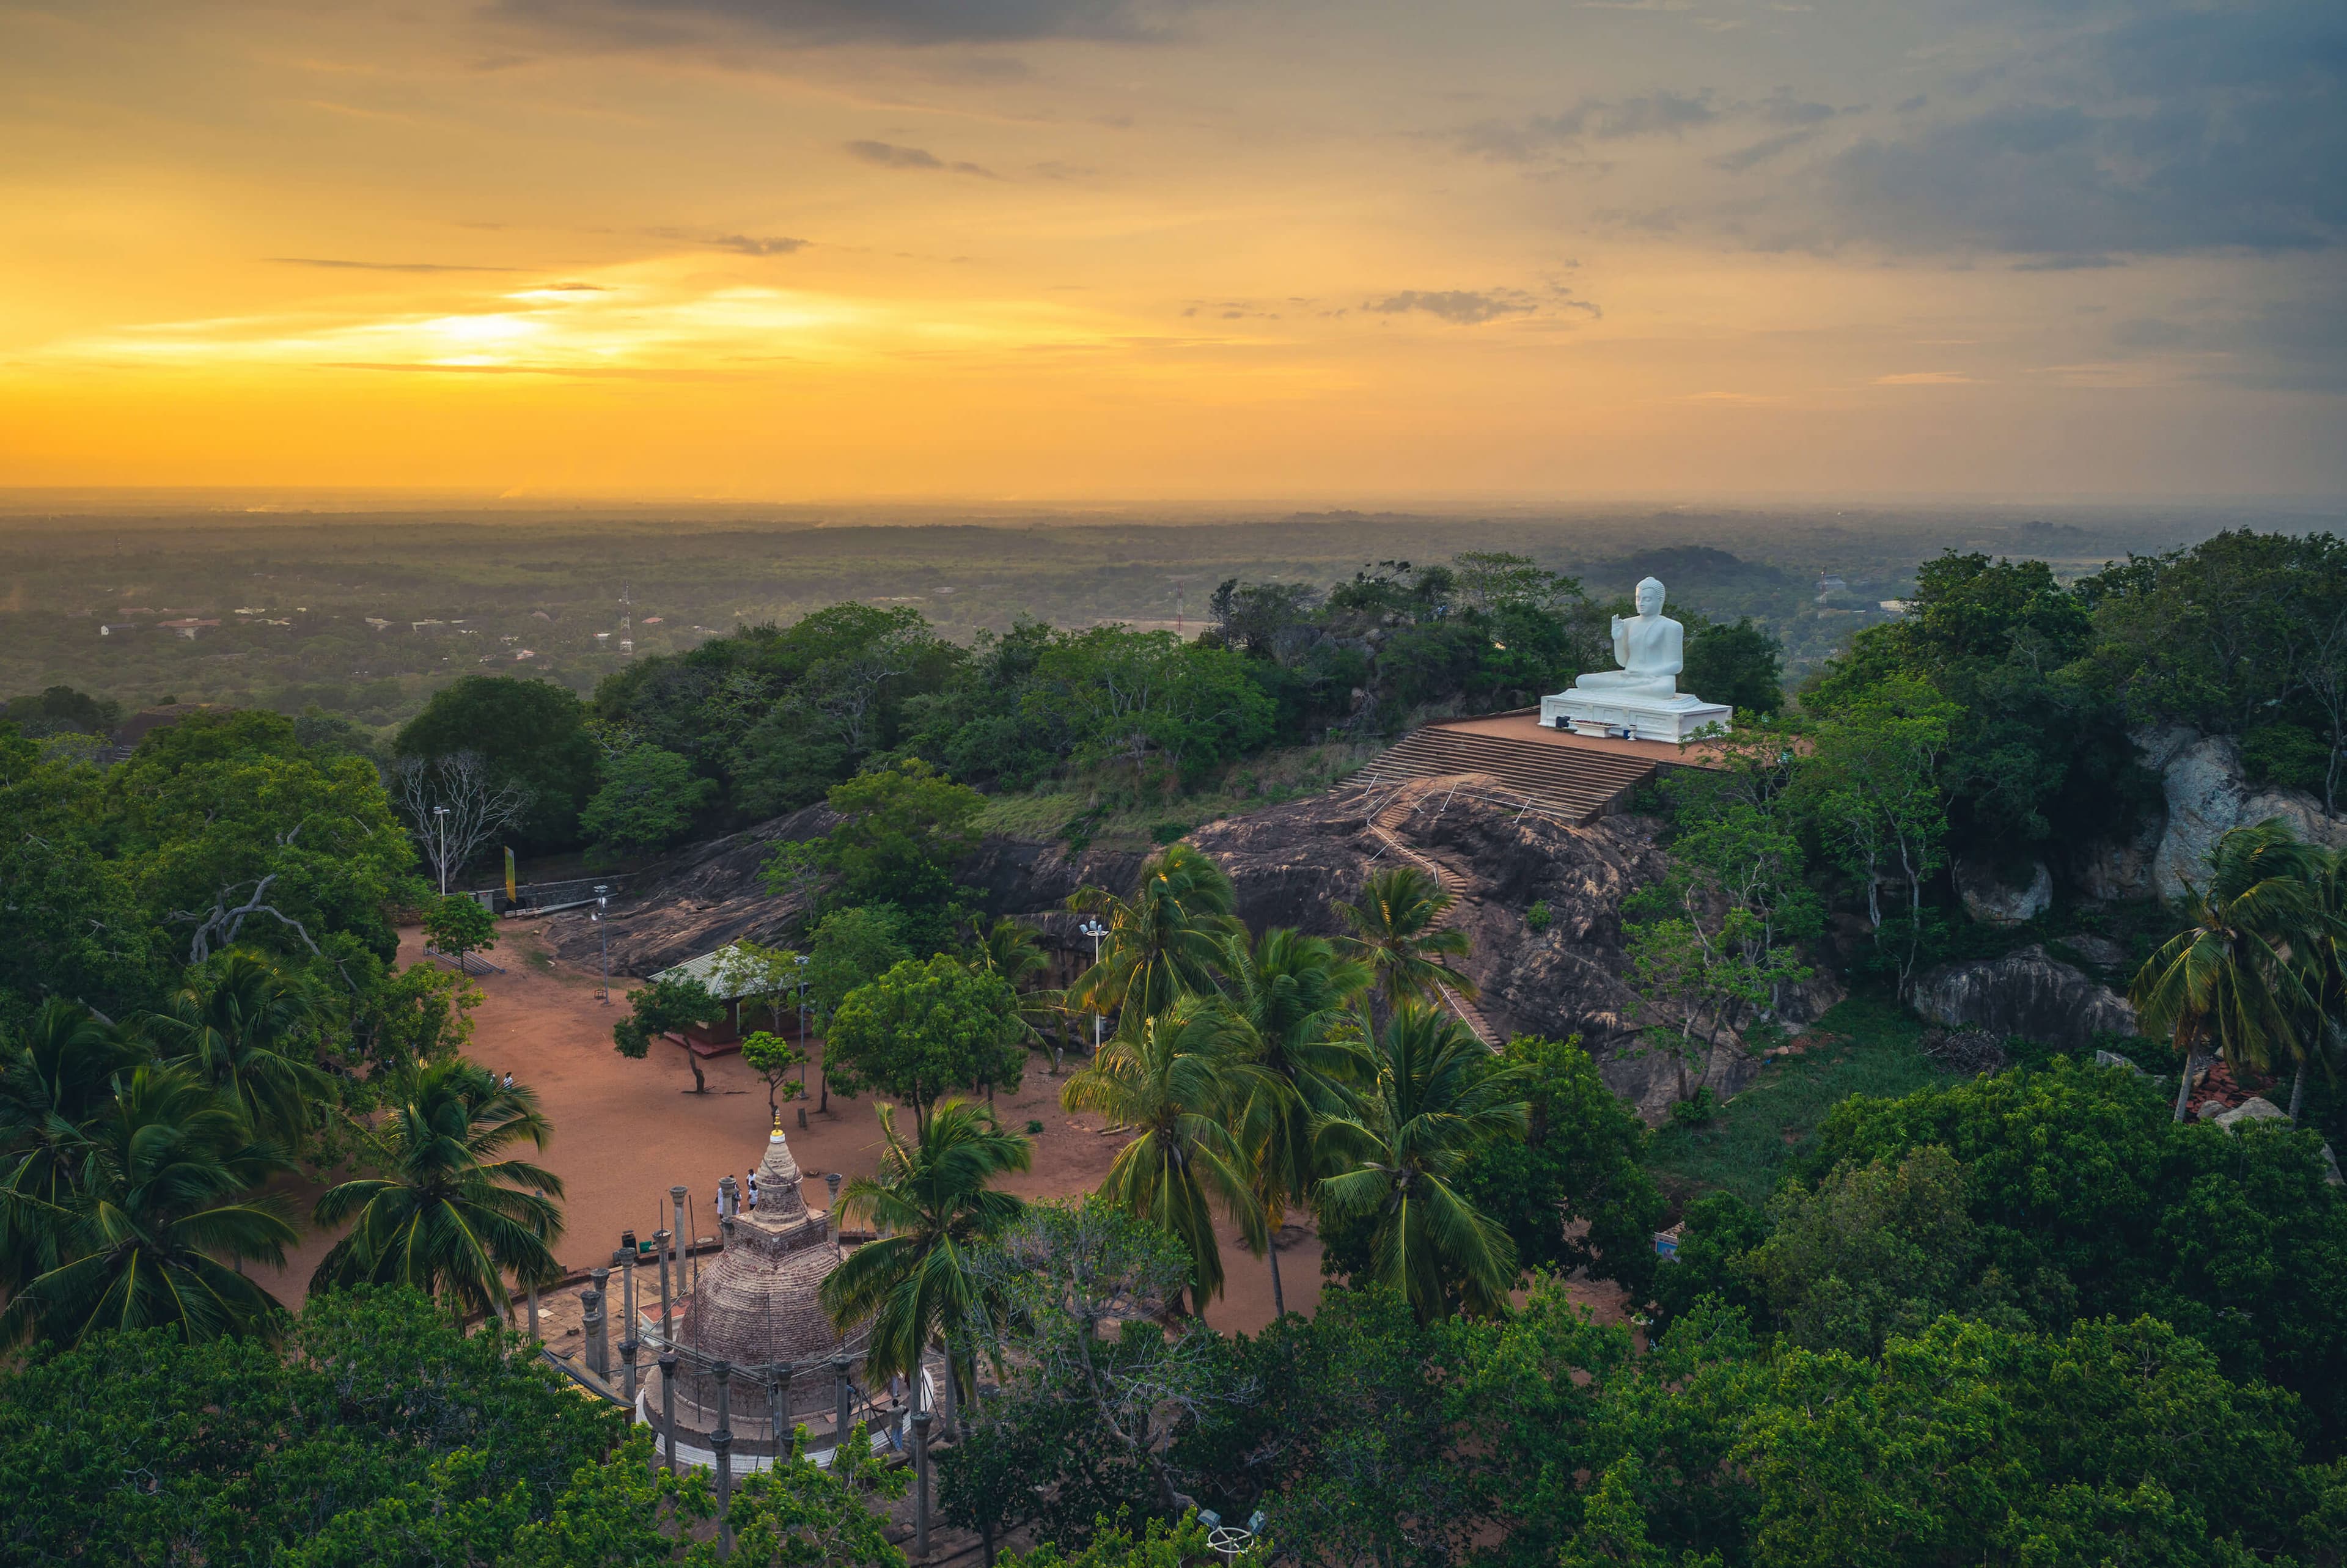 Mihintale at dusk in Anuradhapura, Sri Lanka.